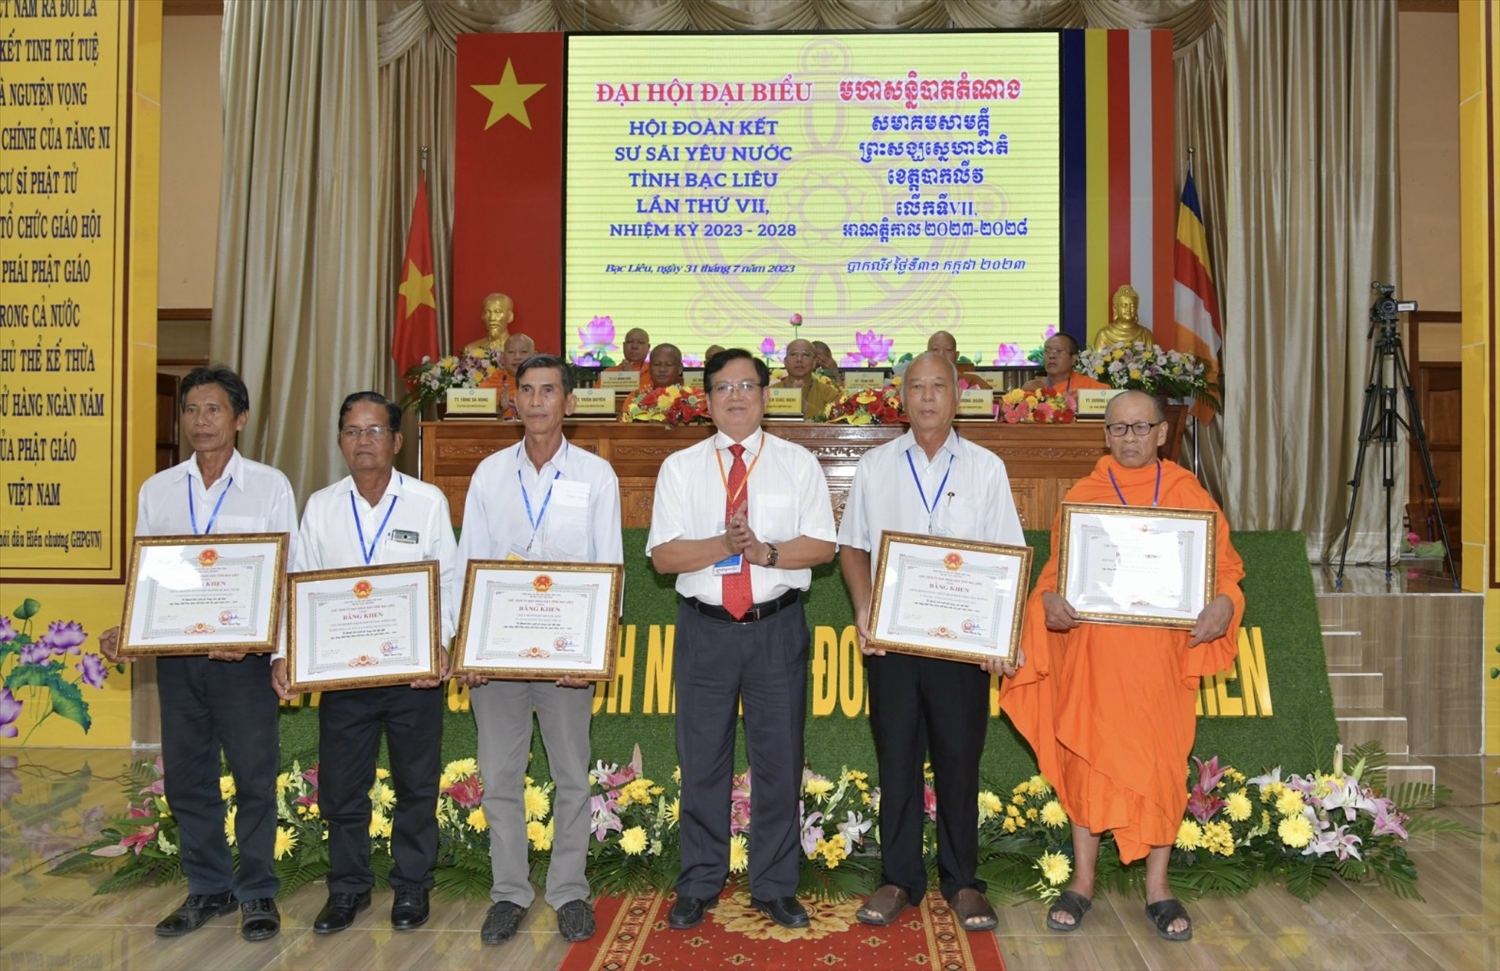 Ông Nguyễn Văn Hoà, Chủ tịch Ủy ban MTTQ Việt Nam tỉnh Bạc Liêu trao Bằng khen đến 5 tập thể đã có thành tích đóng góp xuất sắc trong công tác phật sự và thế sự nhiệm kỳ 2018 – 2023